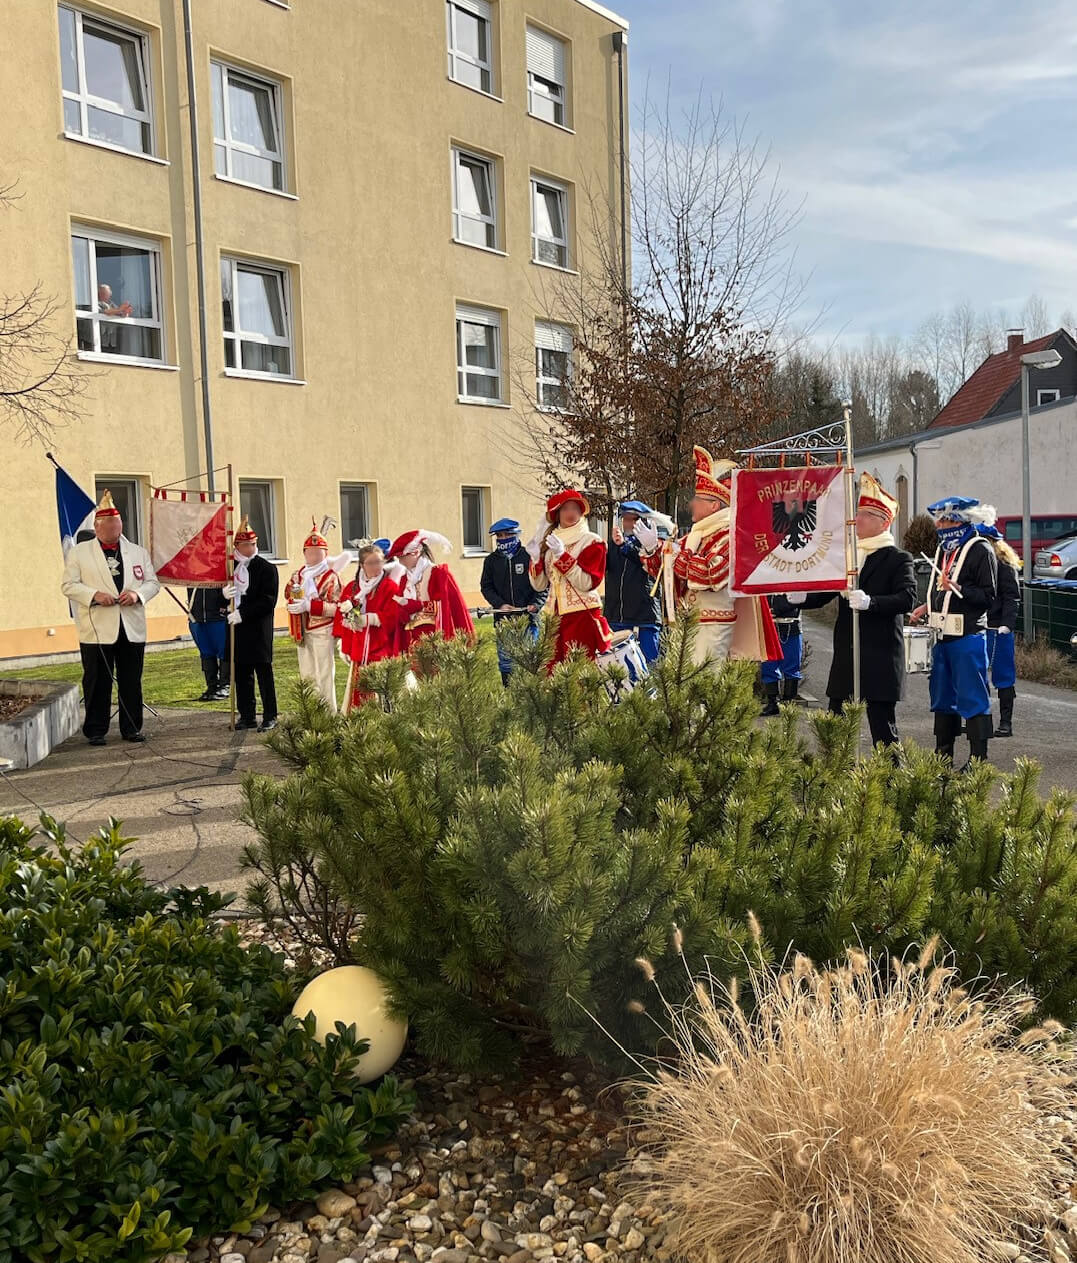 Karnevalszug vor dem Seniorenheim "Kurler Busch" in Dortmund